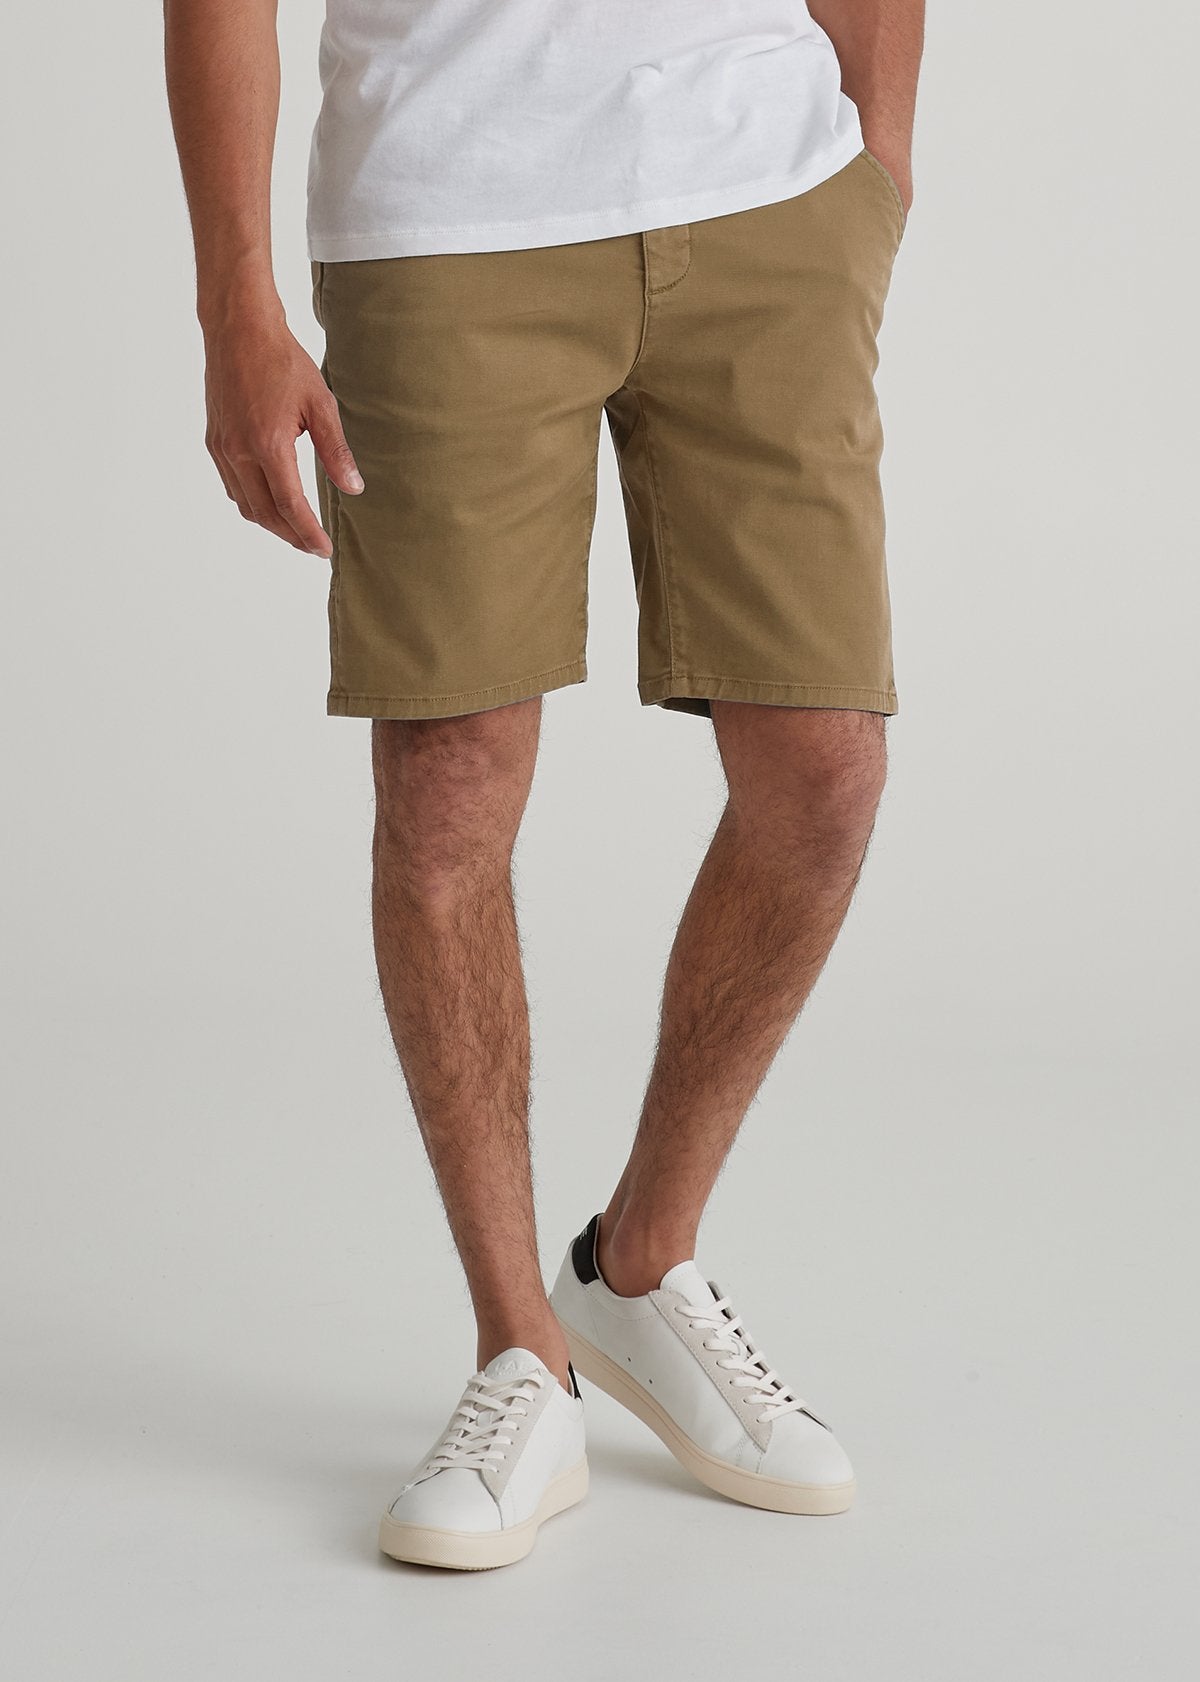 Mens light brown lightweight shorts front